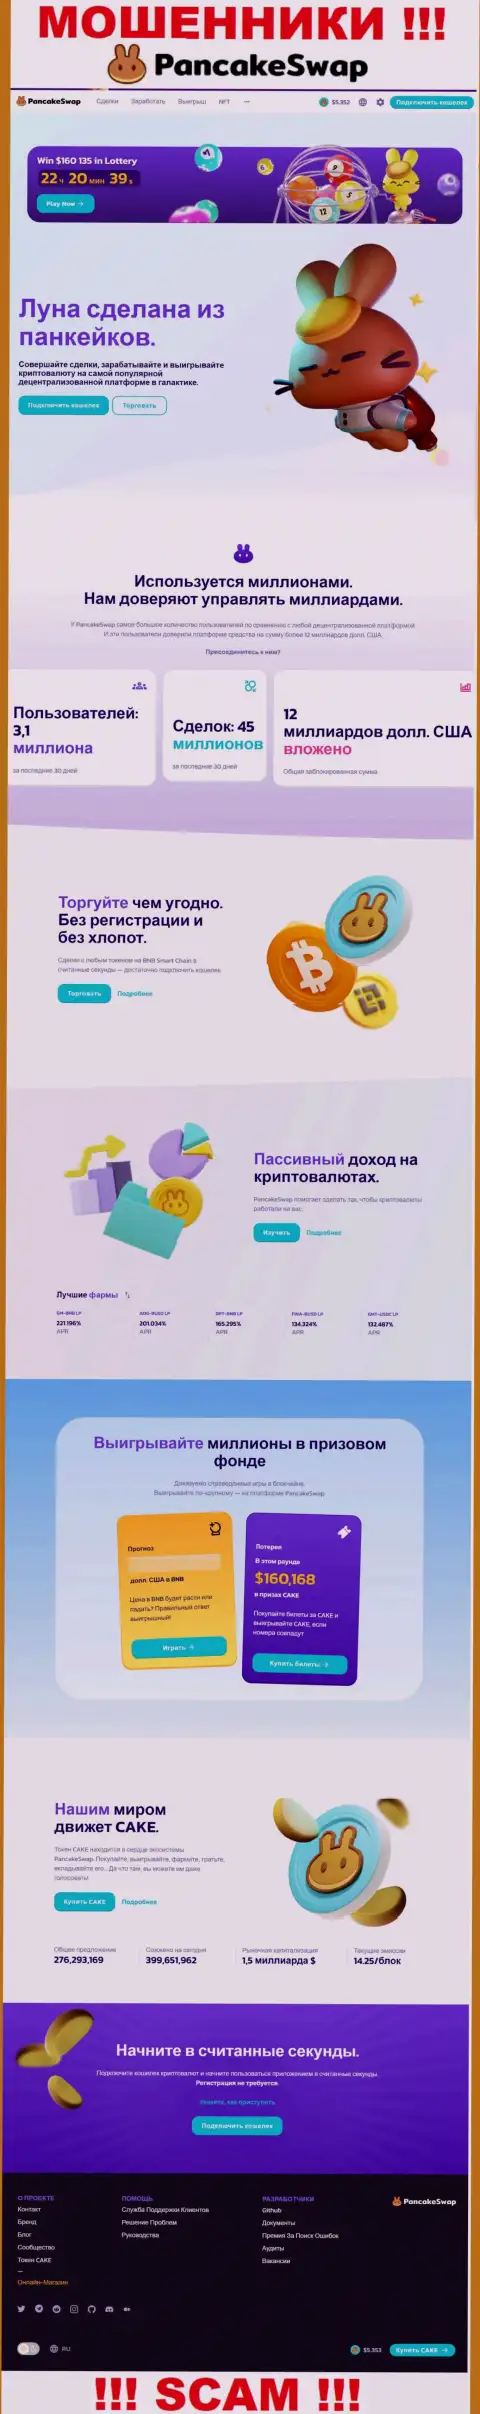 Скрин официального информационного сервиса ПанкейкСвоп, заполненного неправдивыми гарантиями